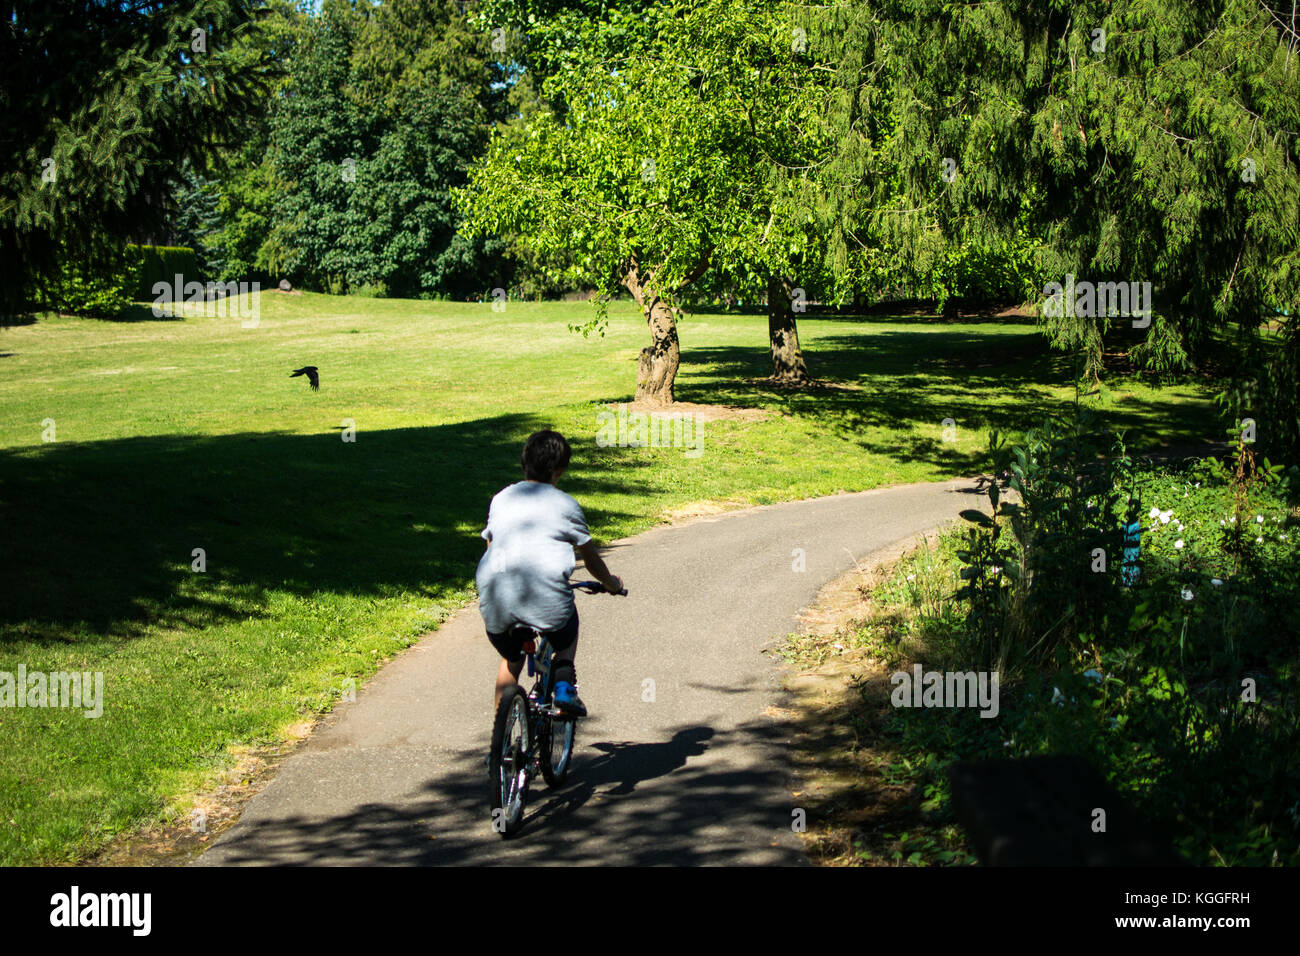 Balade à vélo de l'été - une randonnée à vélo à travers la ville de Lynden Park est une grande manière de passer une chaude journée d'été en juin. Un garçon chevauche son vélo sur un sentier du parc. Banque D'Images